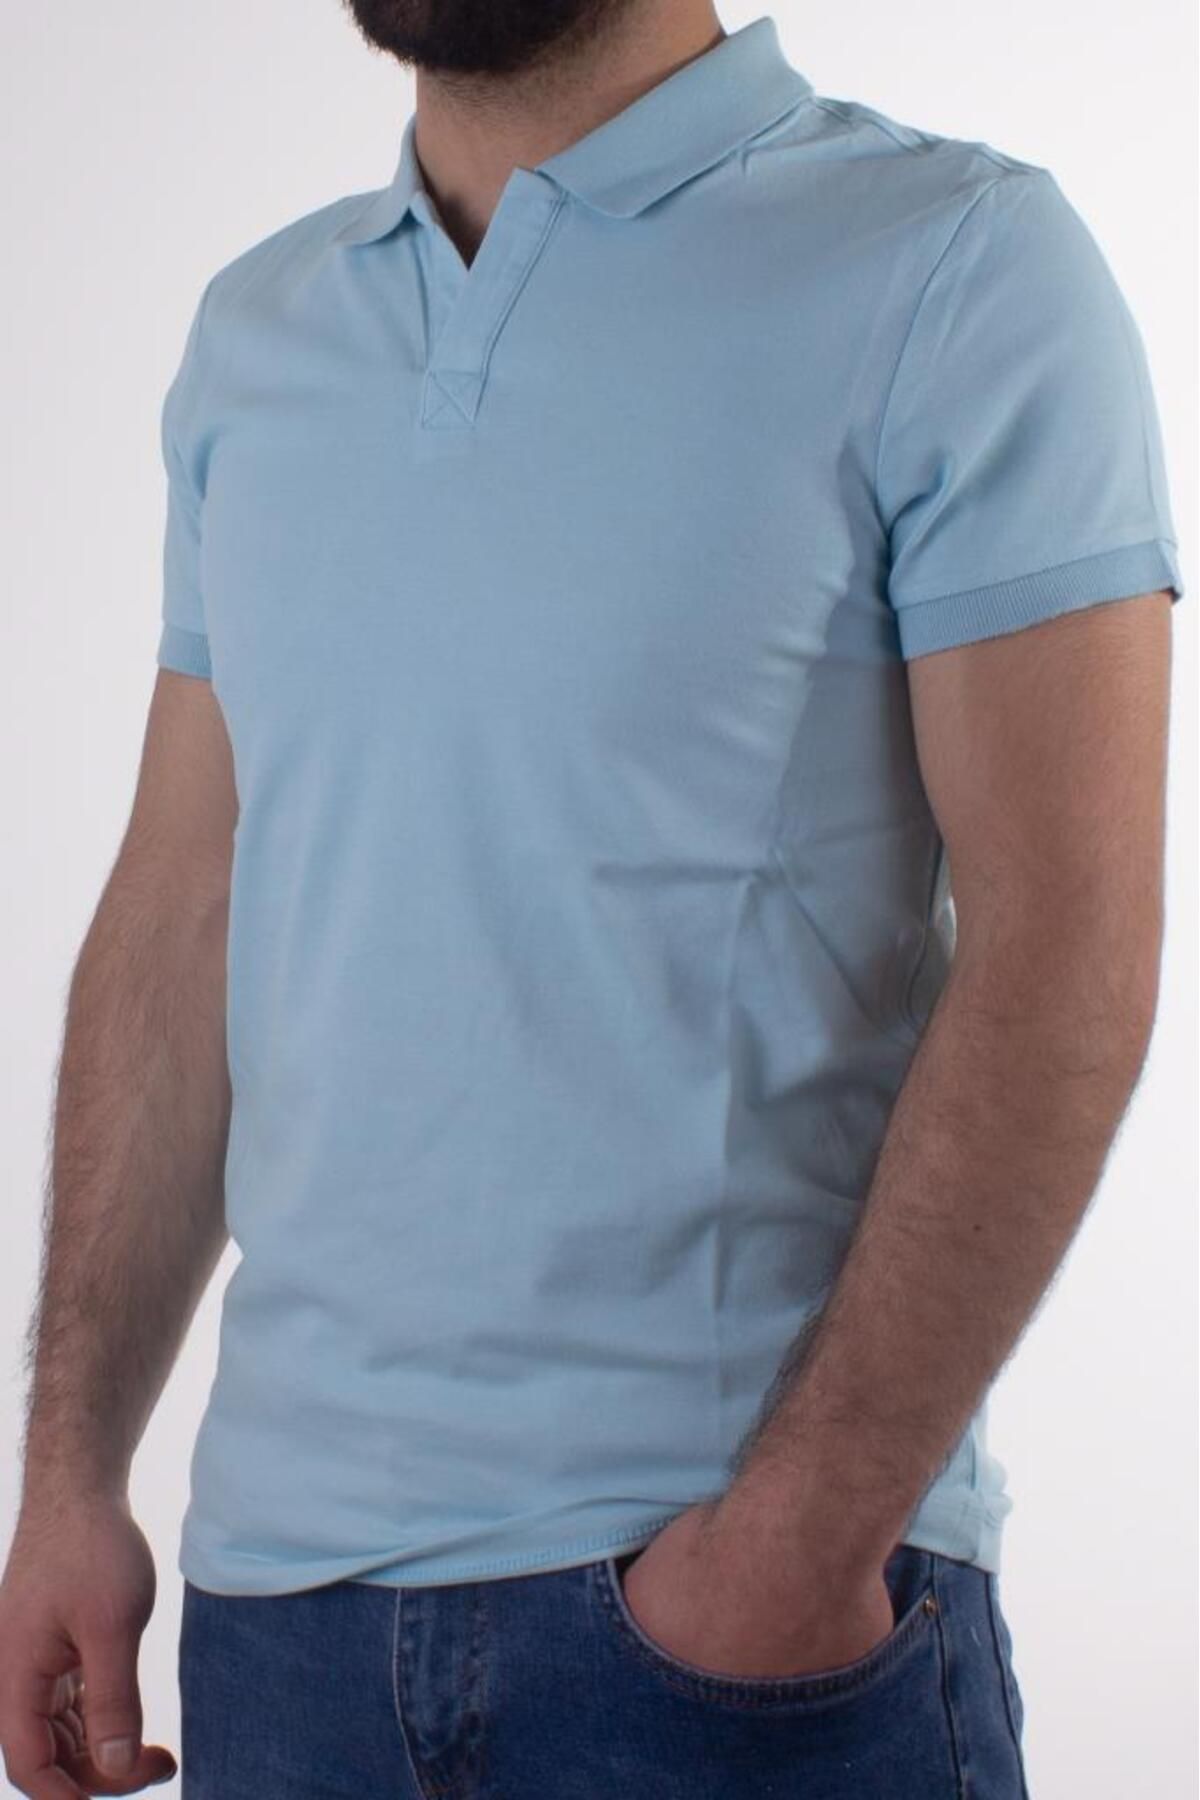 Twister Jeans 1730 Mavi Polo Yaka Erkek T-shirt